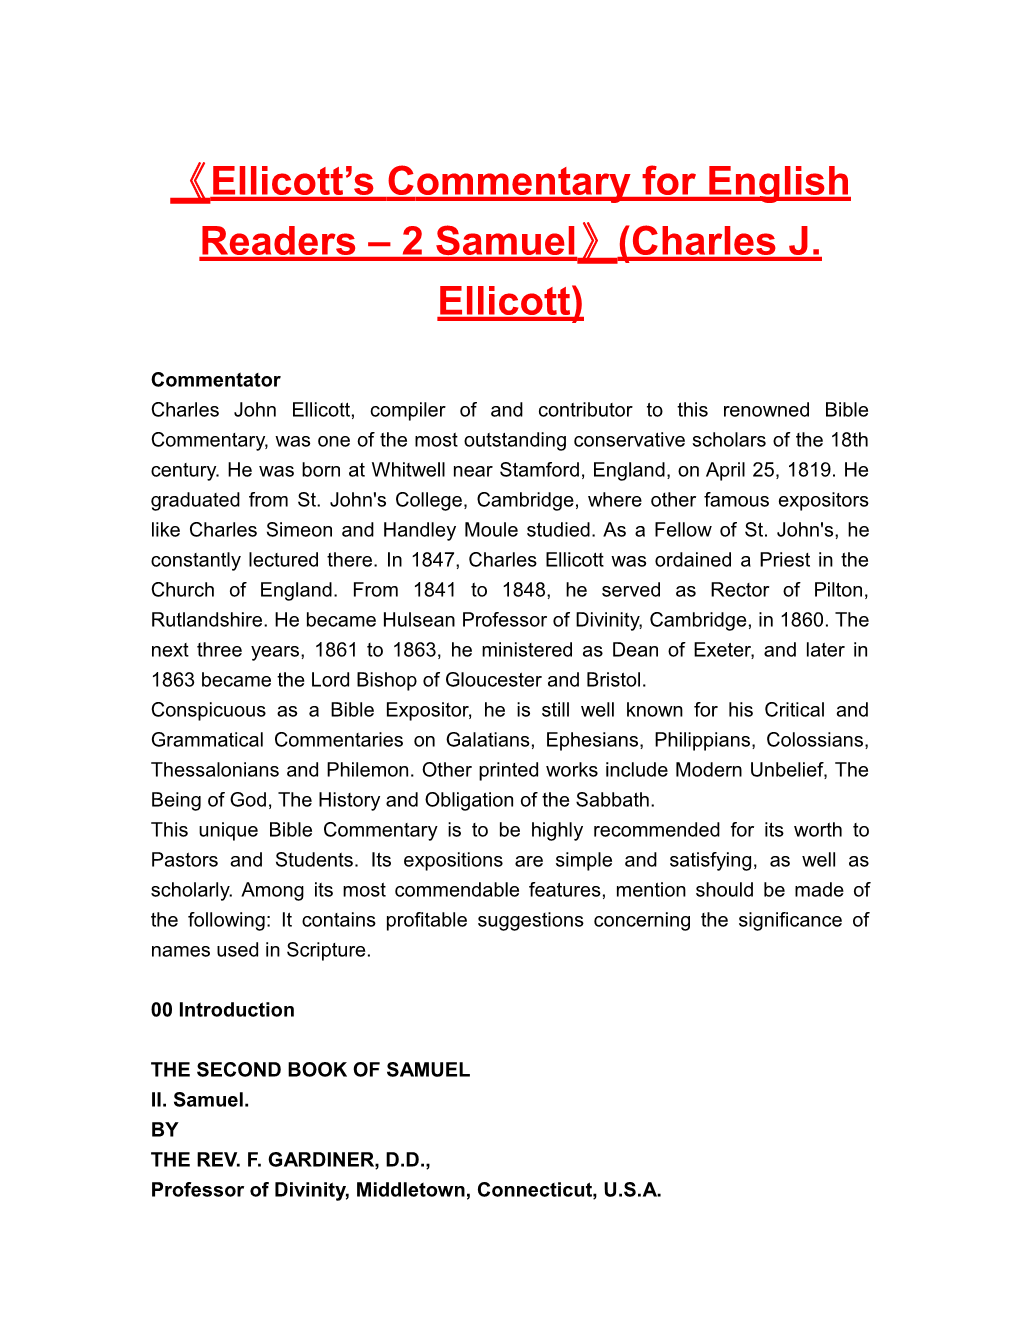 Ellicott Scommentary for English Readers 2 Samuel (Charles J. Ellicott)